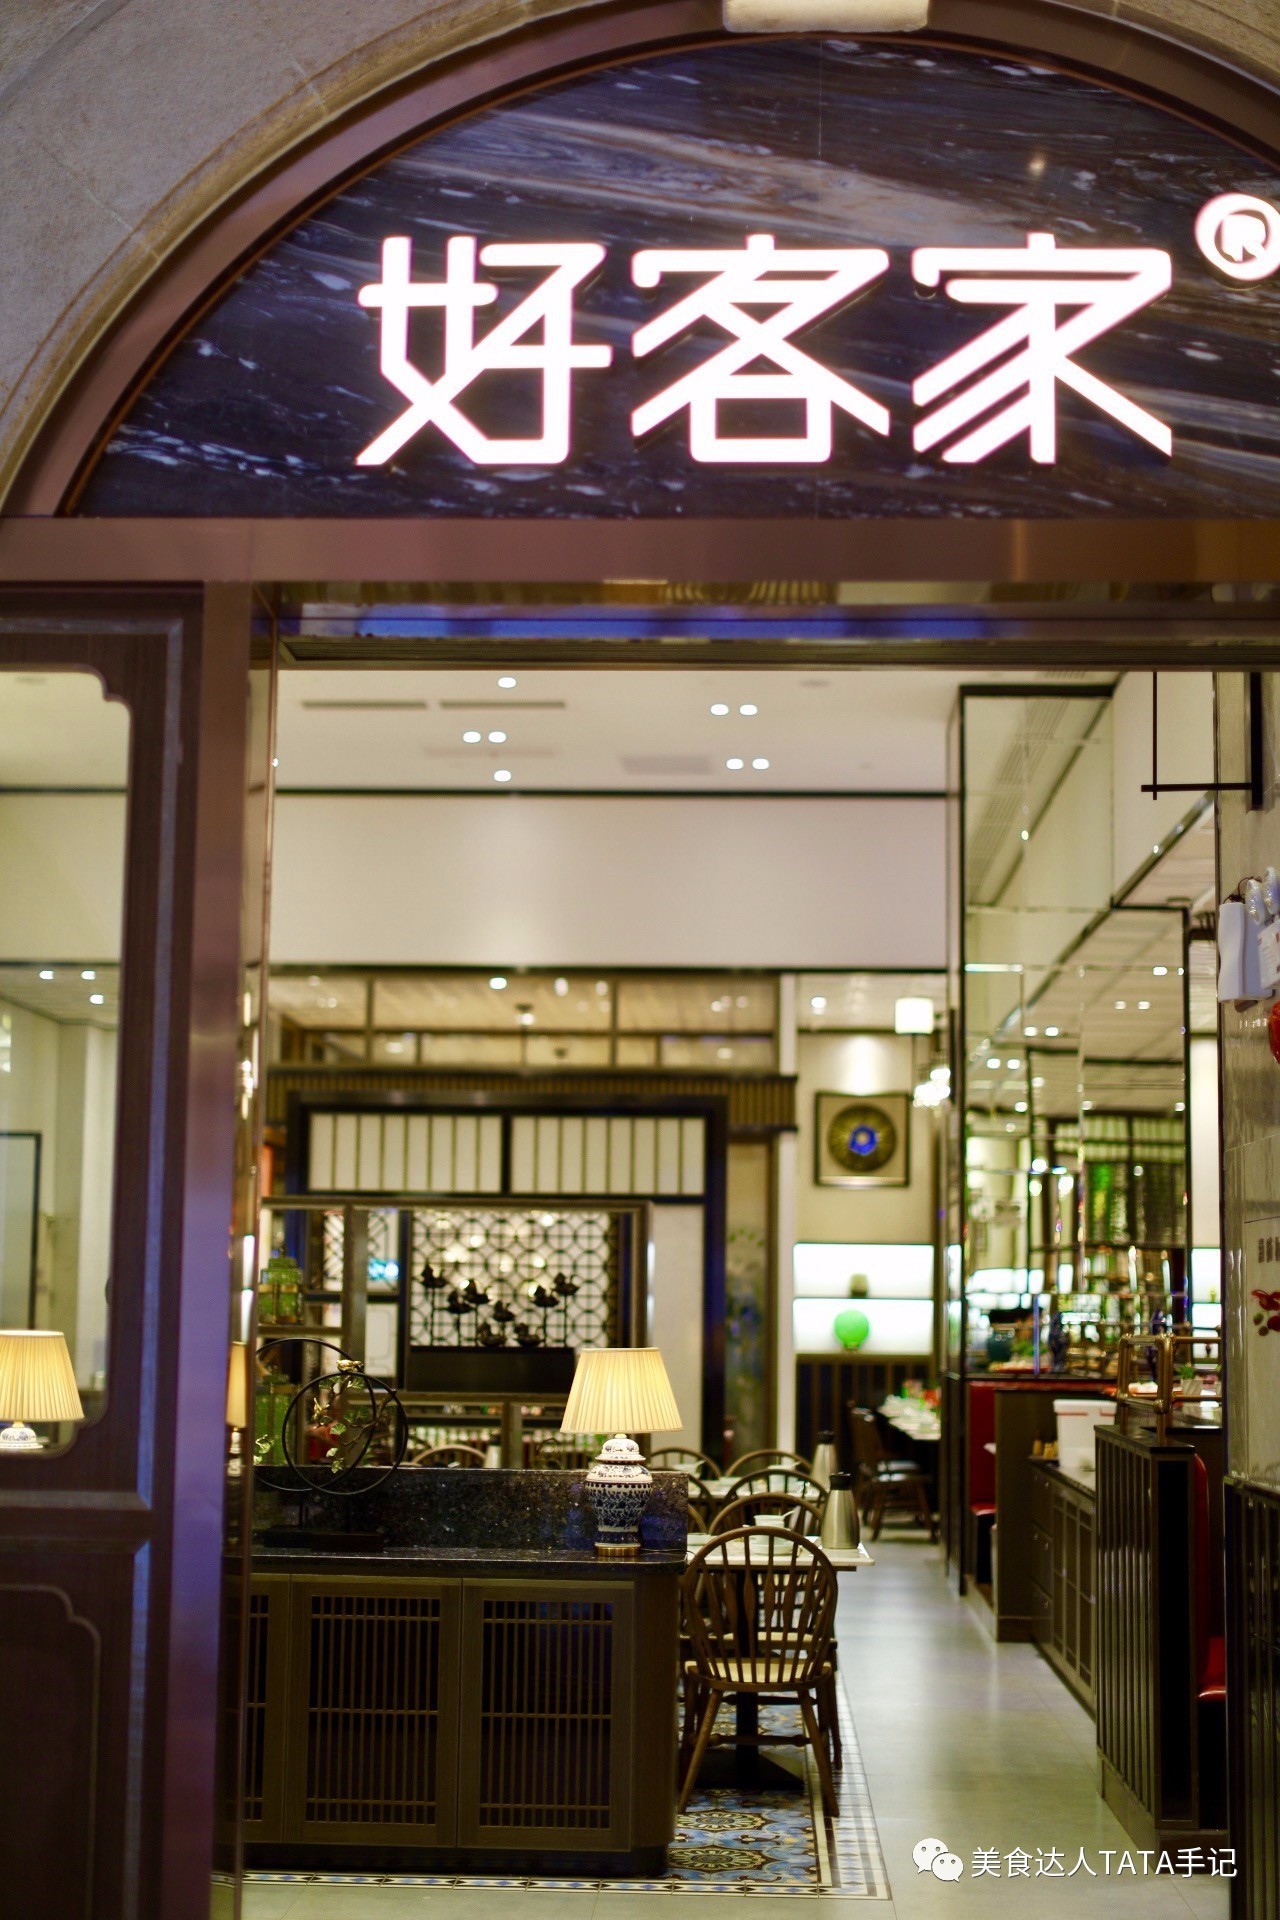 广州好客家餐厅图片